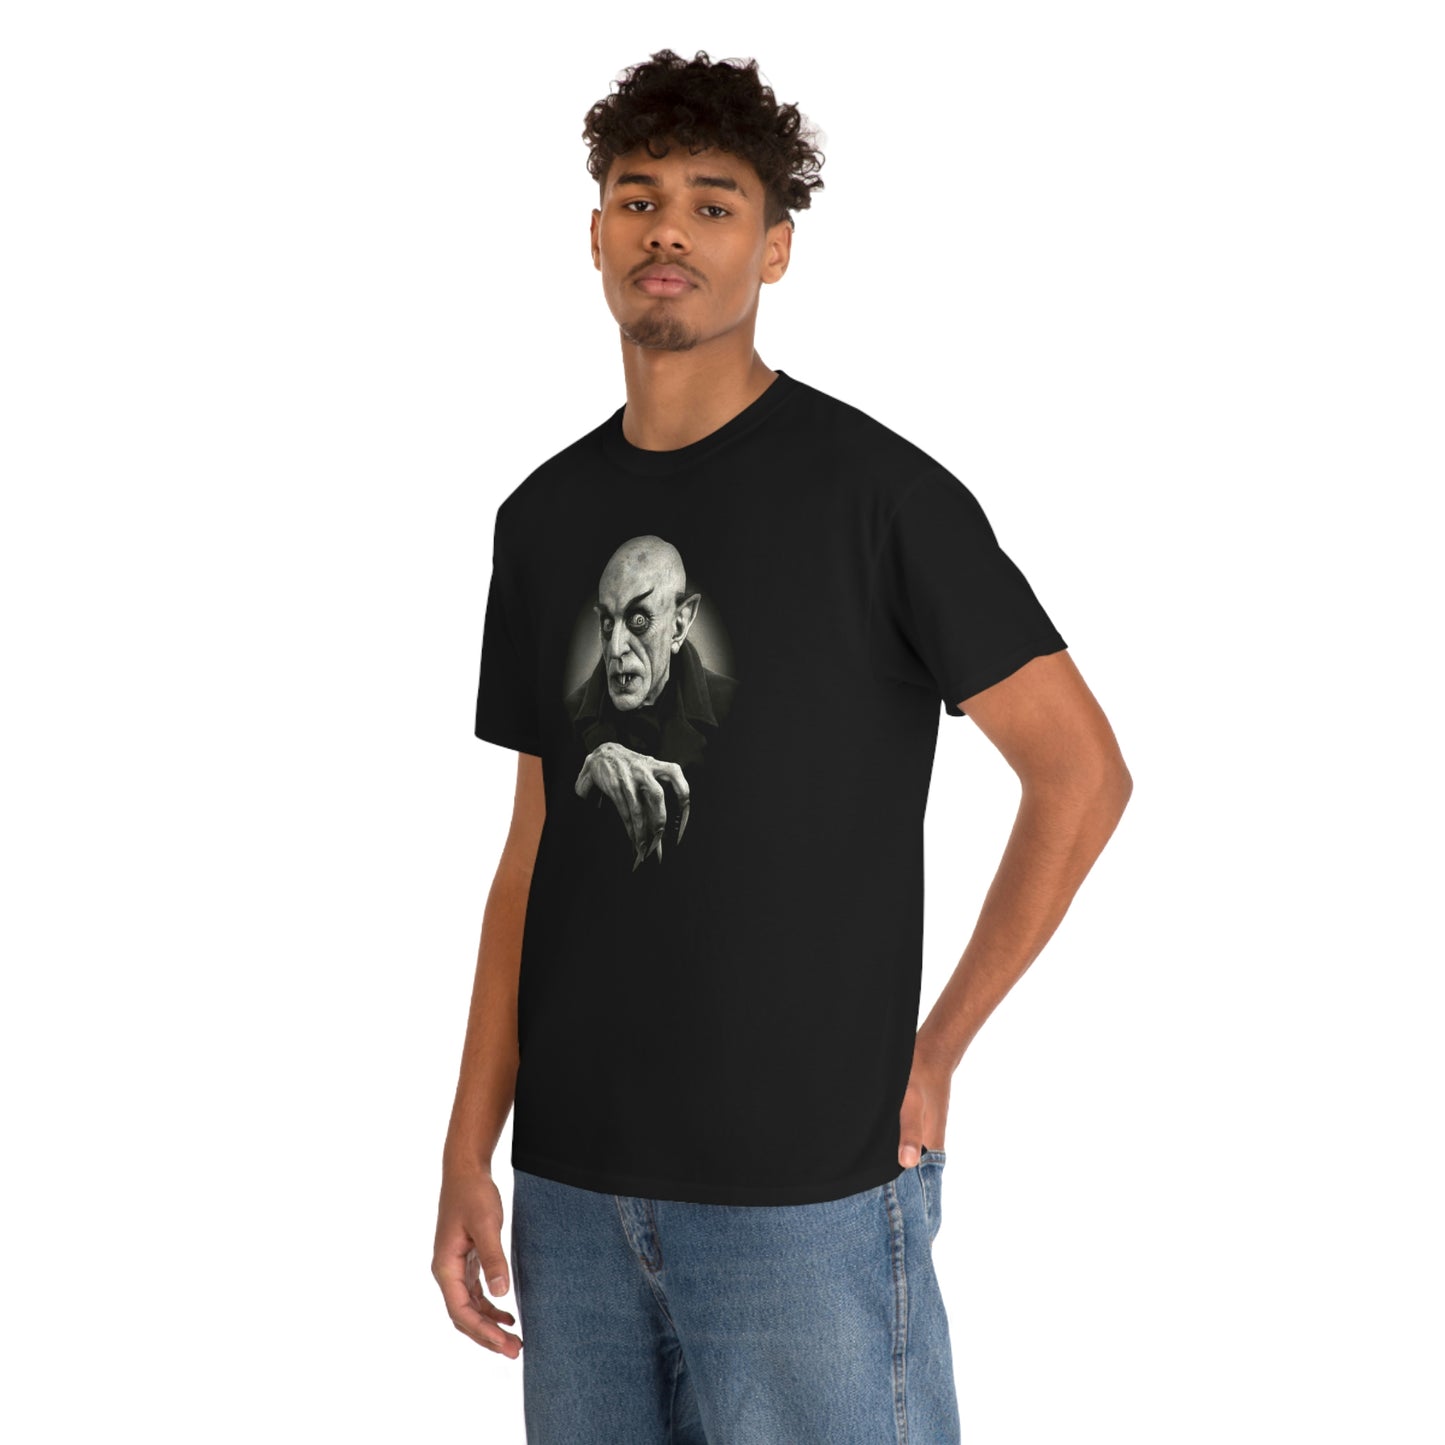 Nosferatu T-Shirt